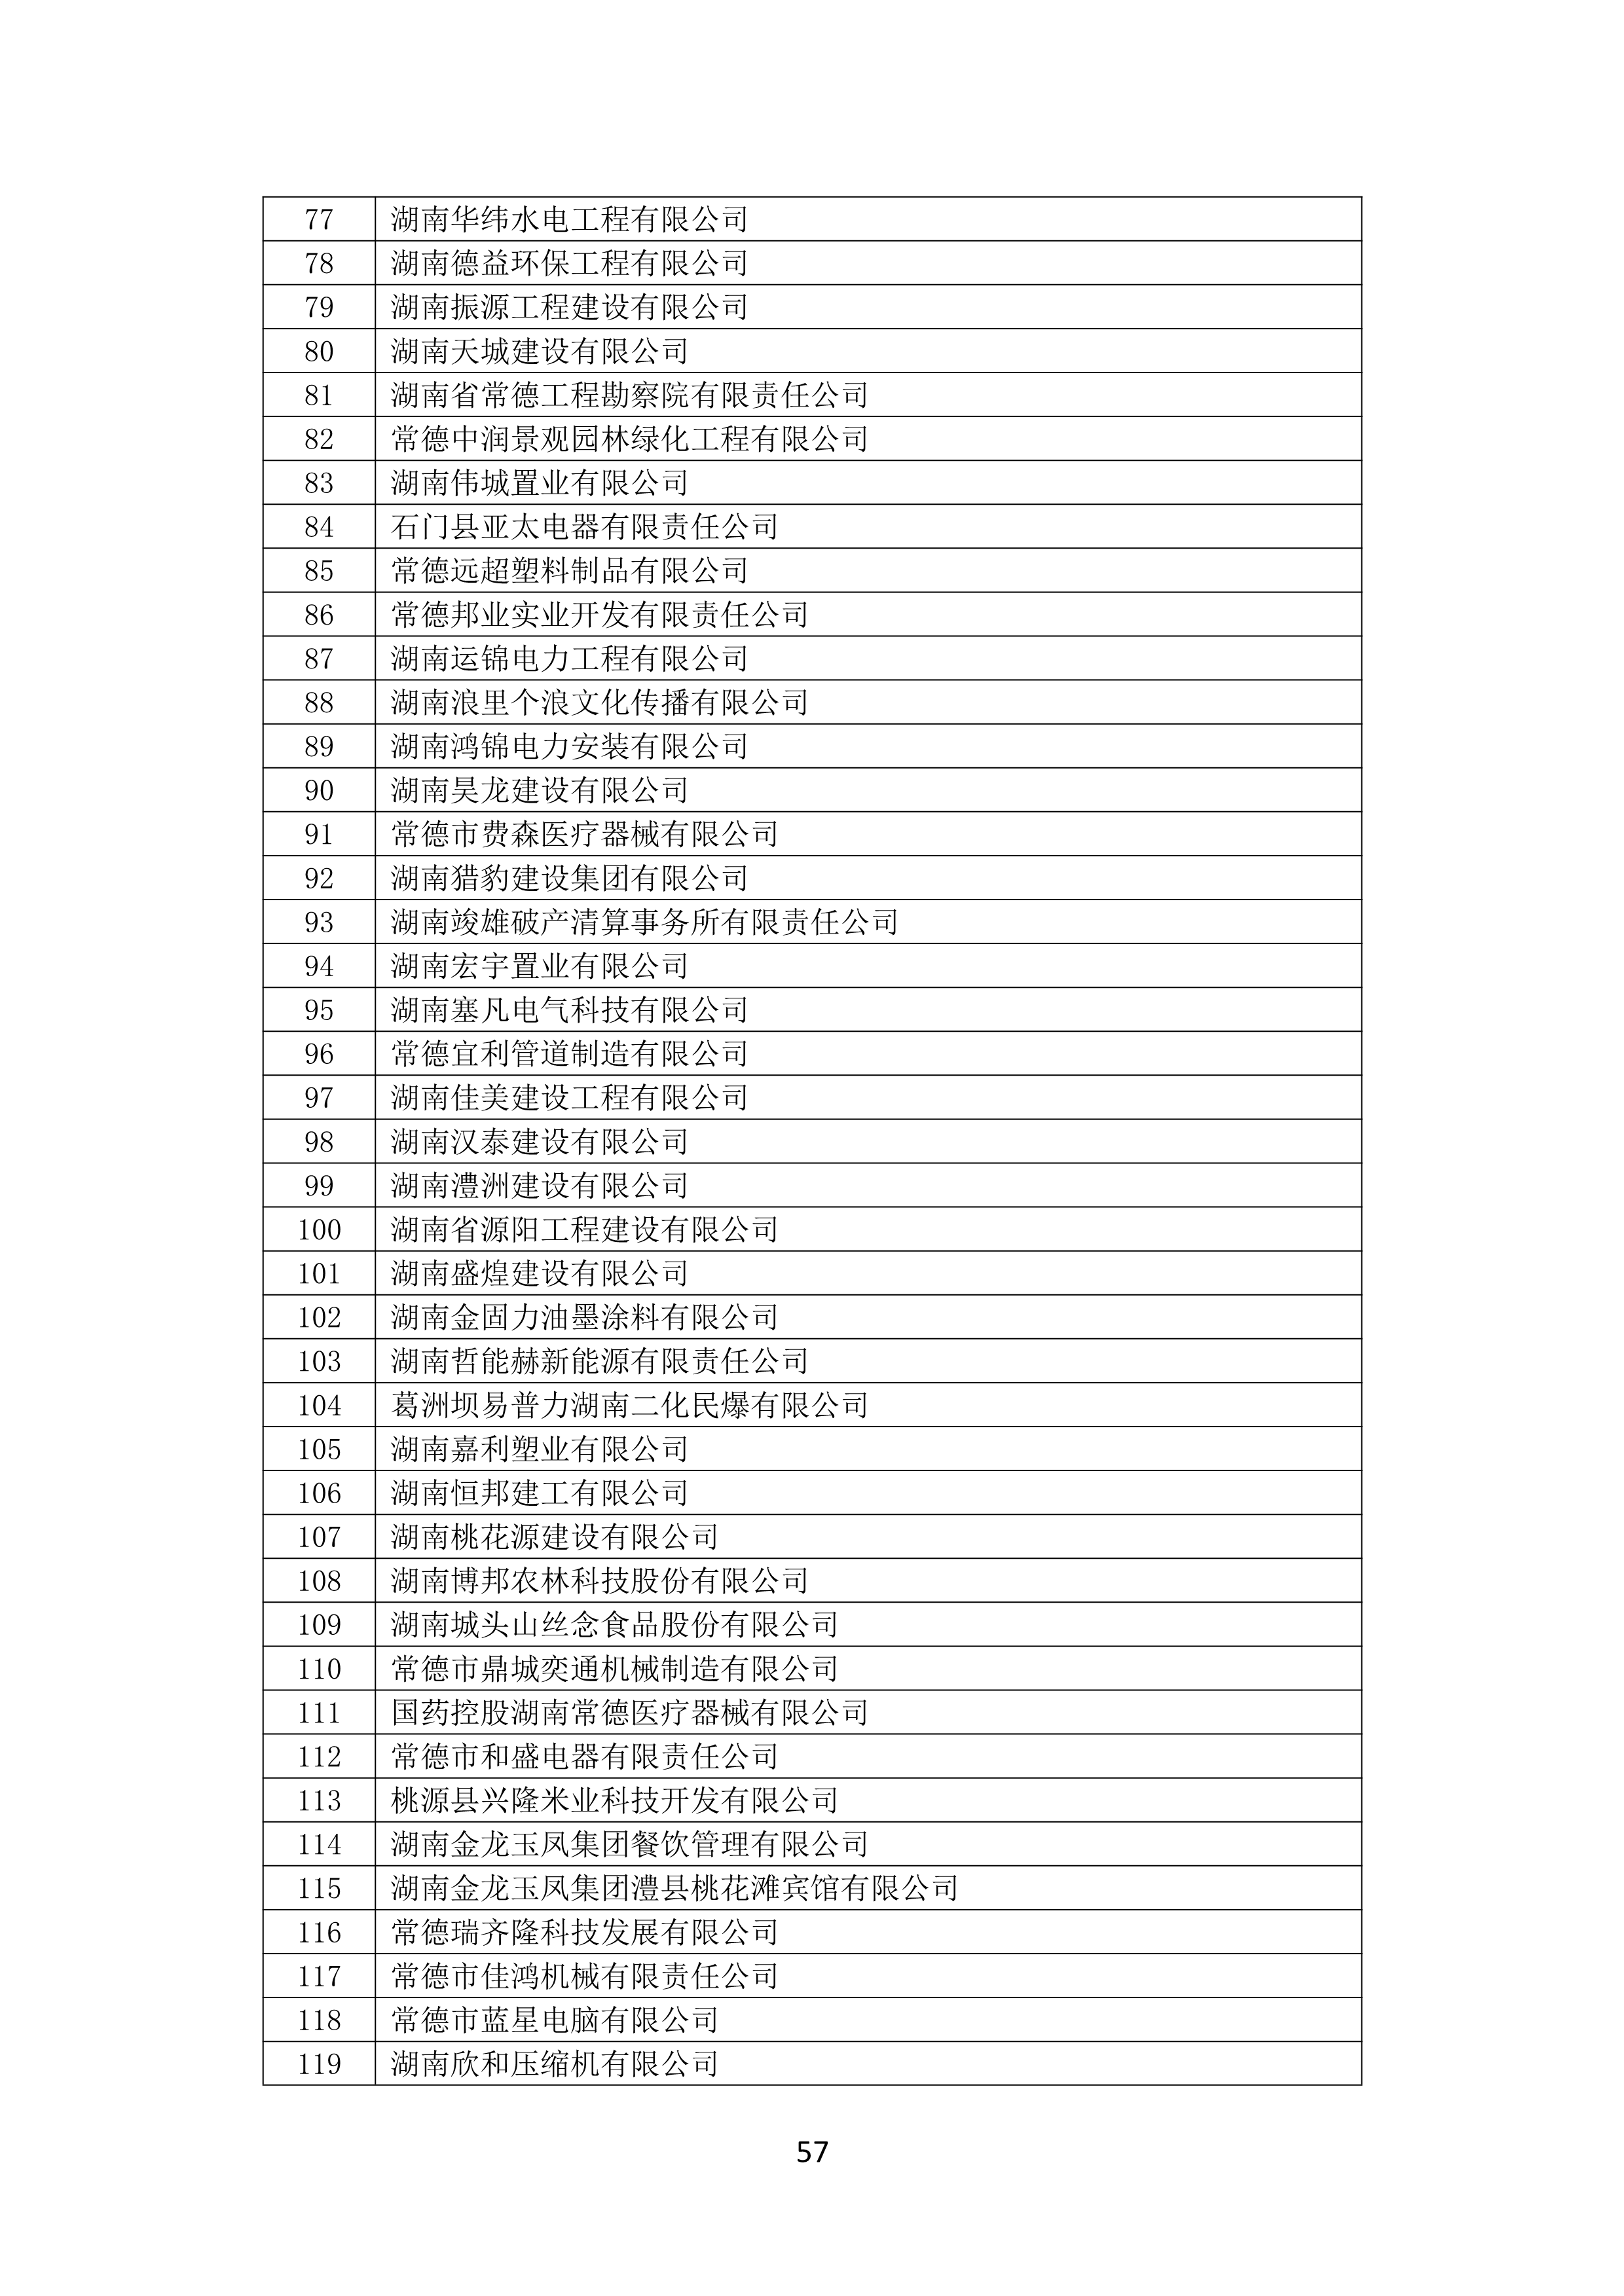 2021 年(nián)度湖南省守合同重信用企業名單_58.png